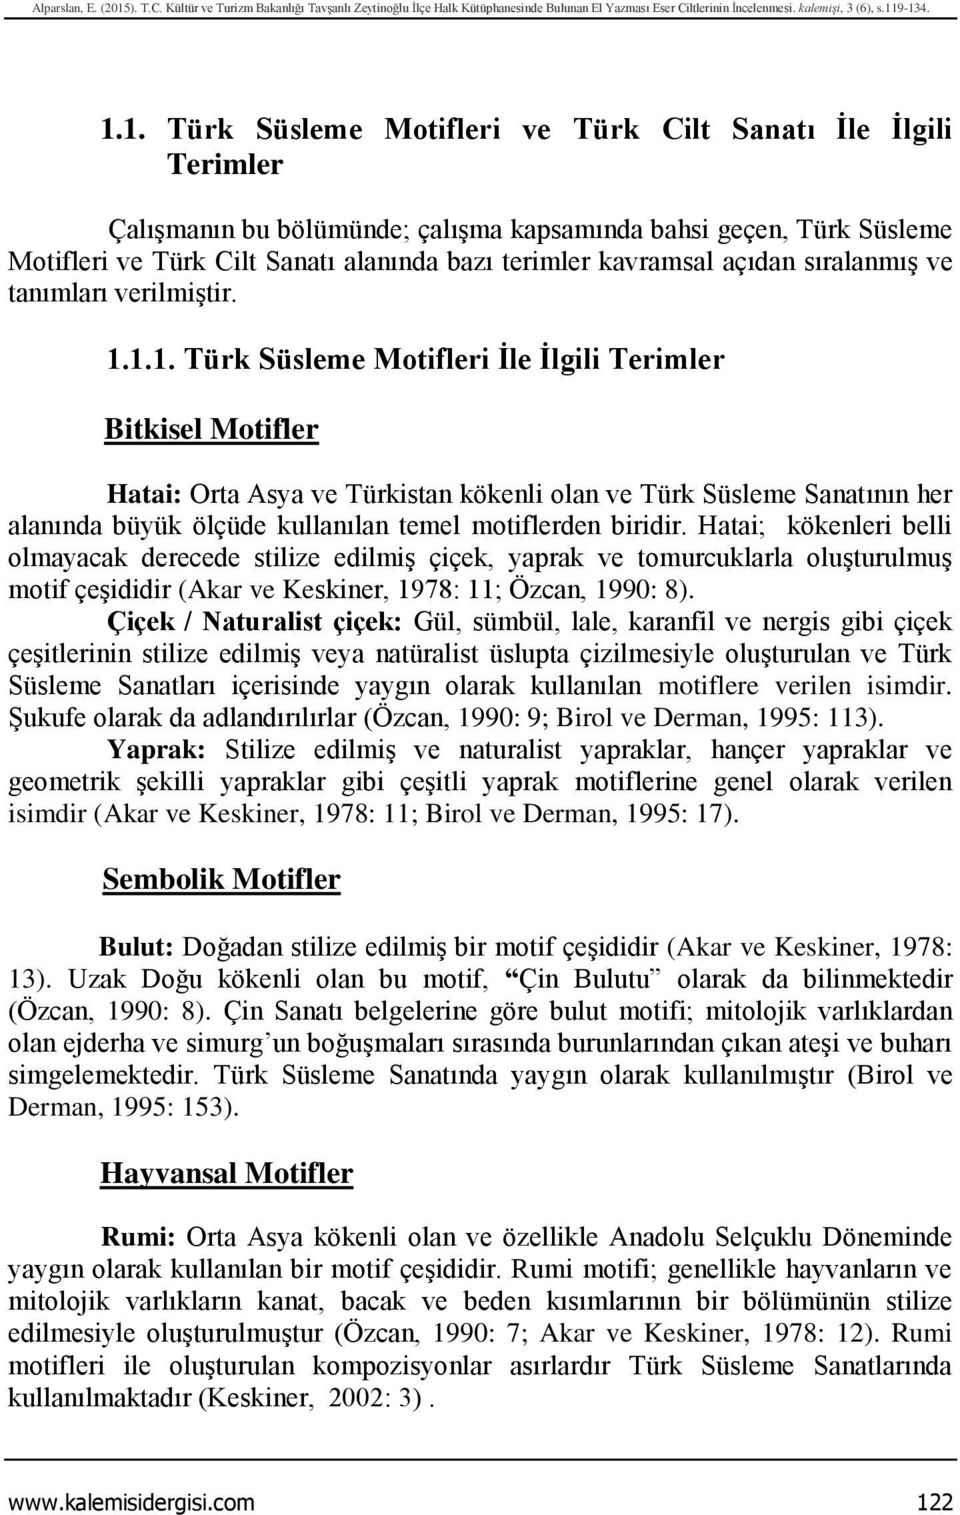 9-134. 1.1. Türk Süsleme Motifleri ve Türk Cilt Sanatı İle İlgili Terimler Çalışmanın bu bölümünde; çalışma kapsamında bahsi geçen, Türk Süsleme Motifleri ve Türk Cilt Sanatı alanında bazı terimler